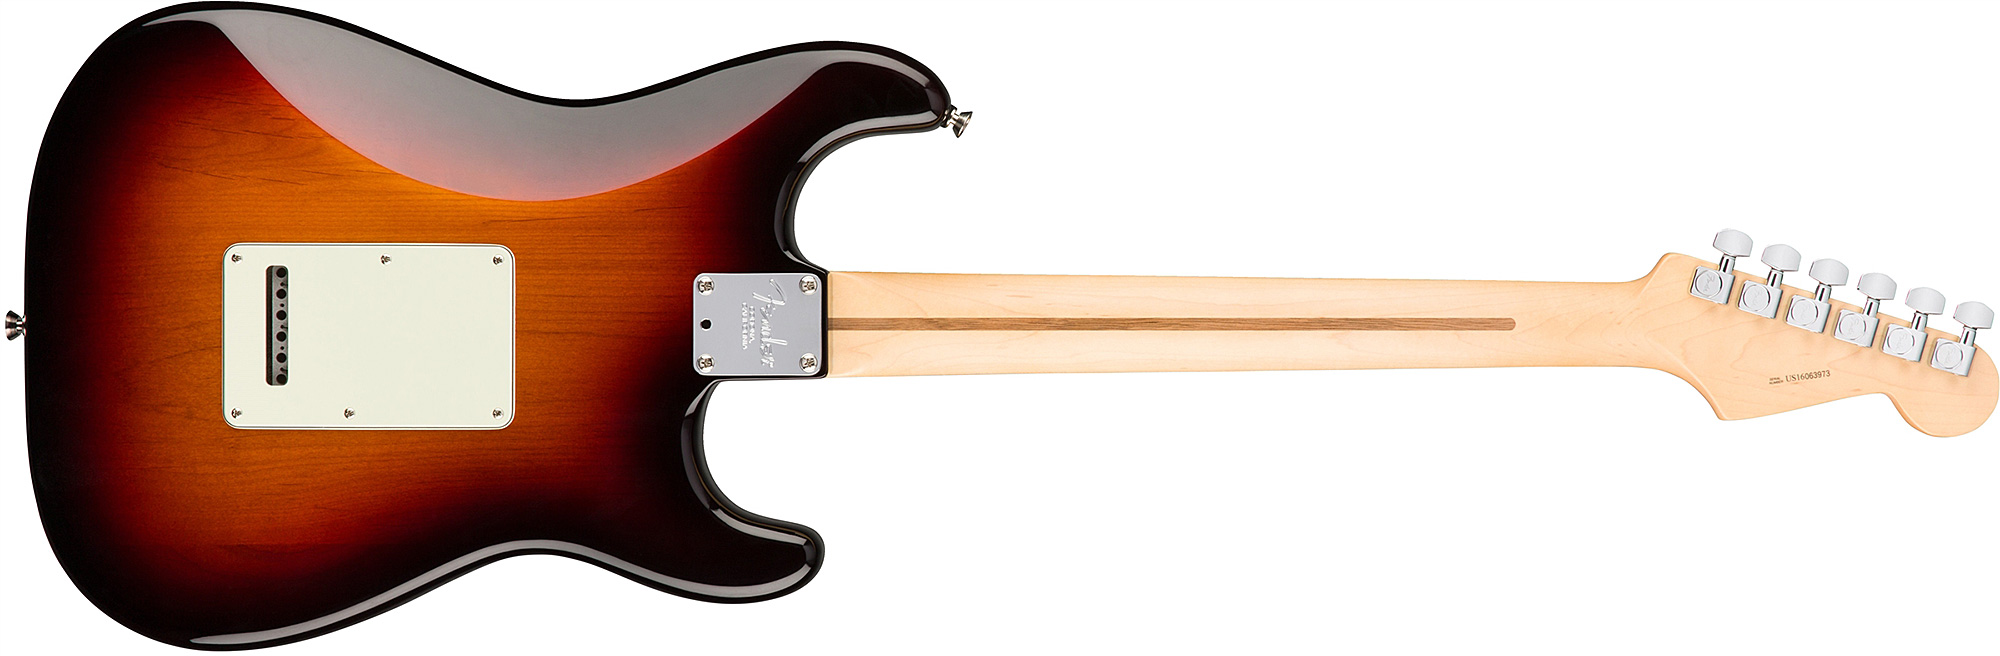 Fender Strat American Professional Lh Usa Gaucher 3s Mn - 3-color Sunburst - Linkshandige elektrische gitaar - Variation 1